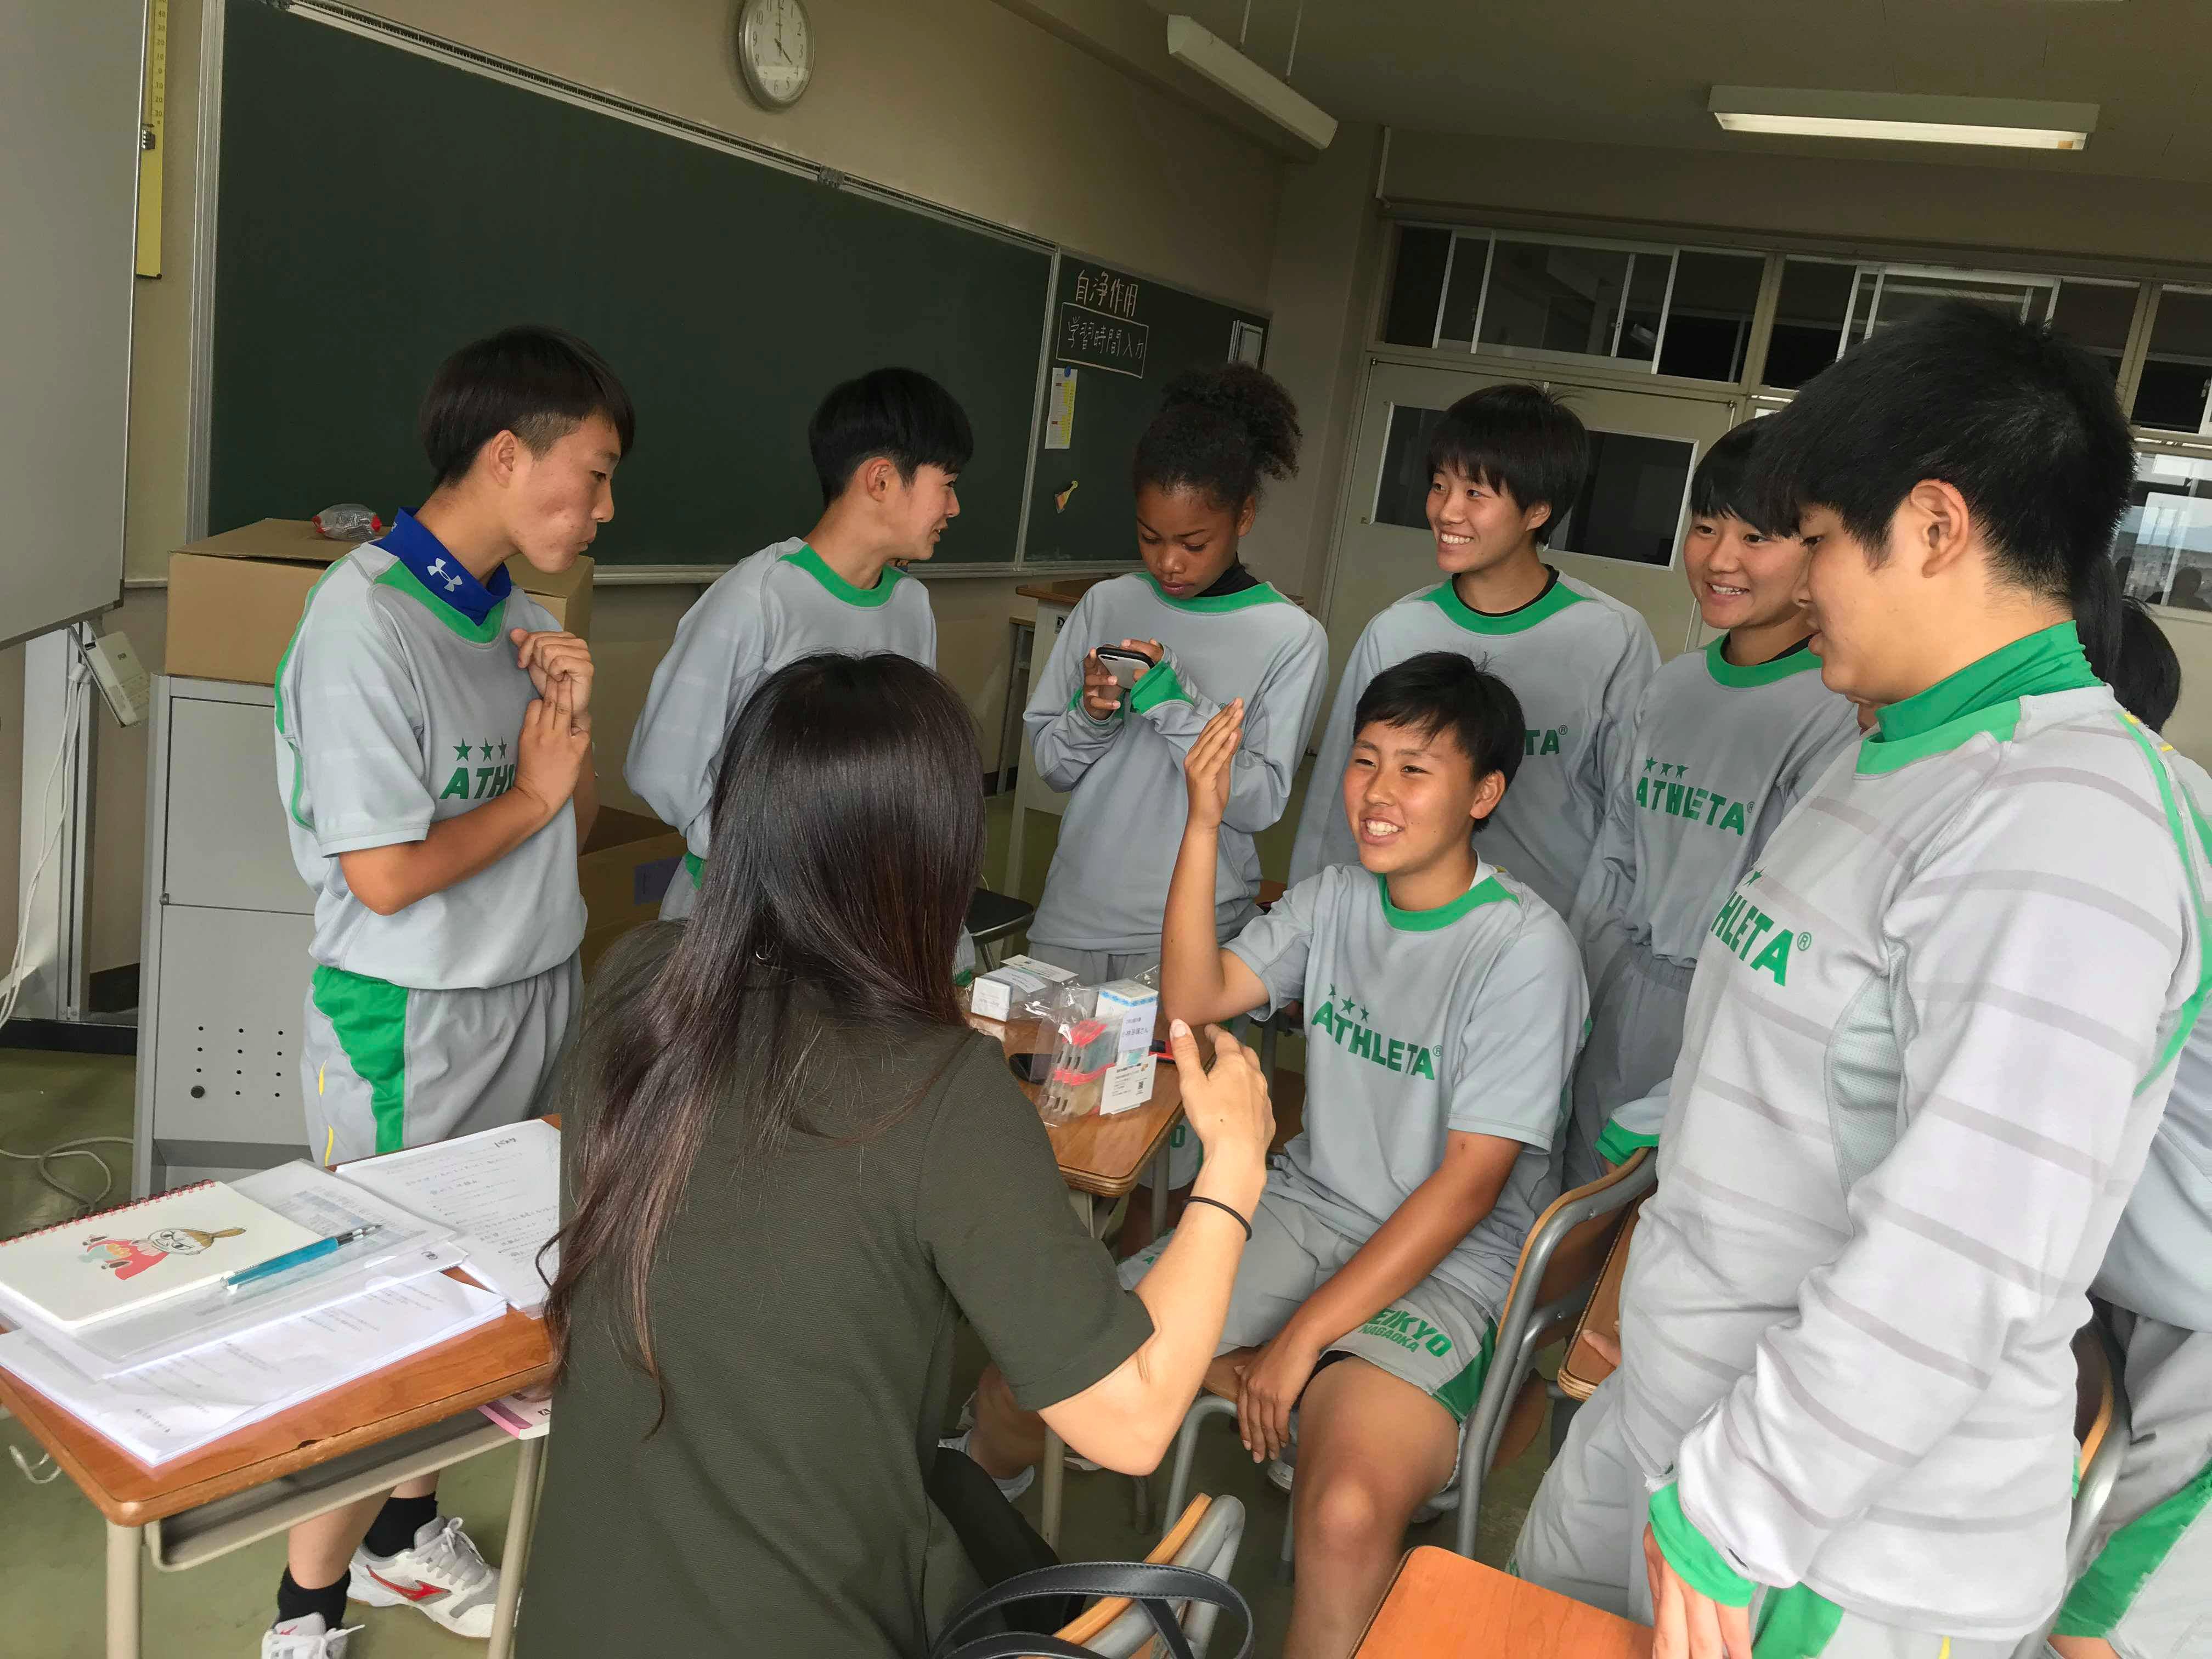 帝京長岡高等学校 新潟県 にて高校生応援プロジェクトを実施 Pikaichi